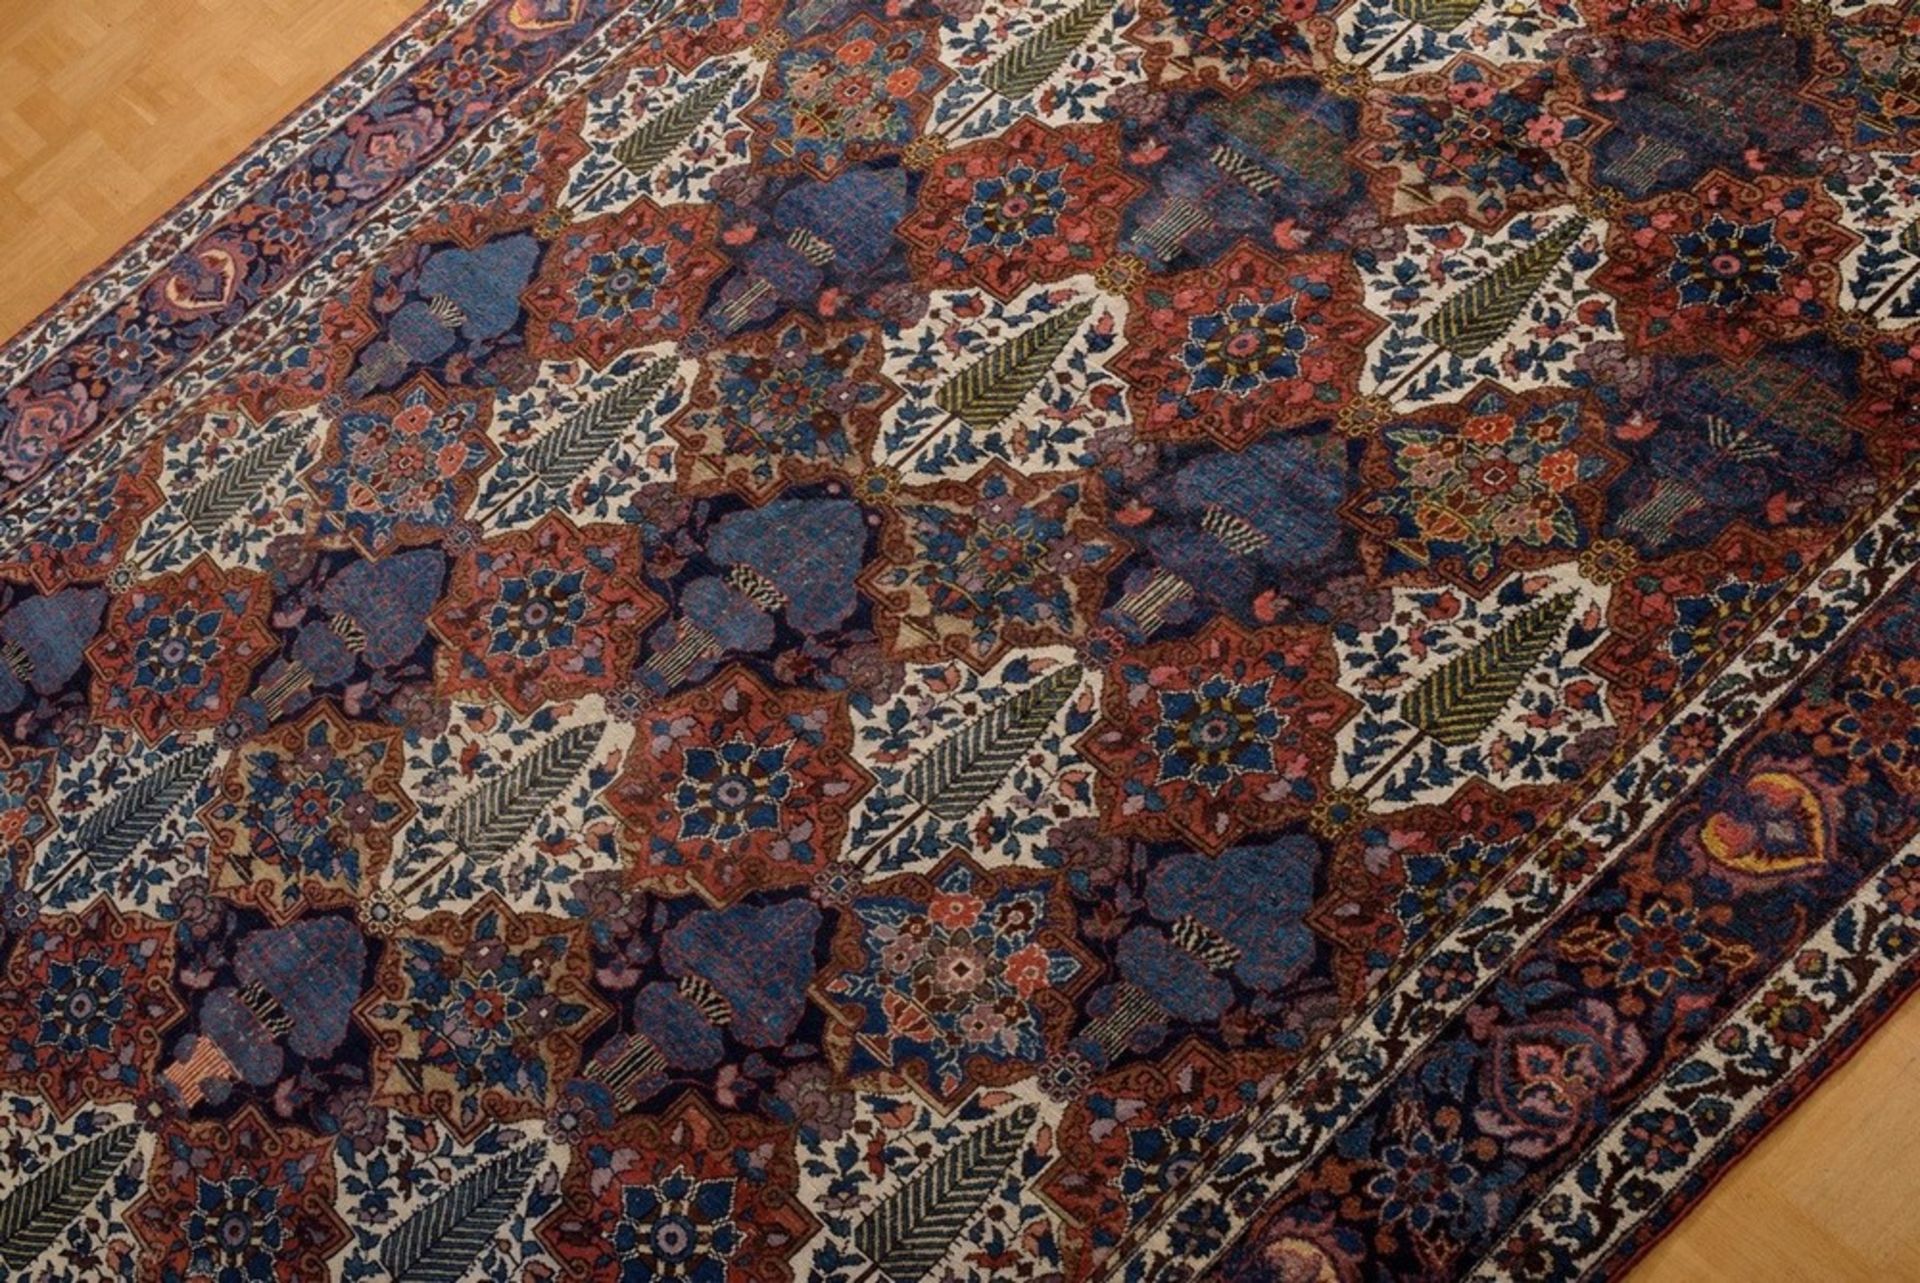 Großer Bachtiari Teppich mit floralem Rapportmuster aus Feldern in unterschiedlichen Grundfarben, d - Bild 2 aus 7